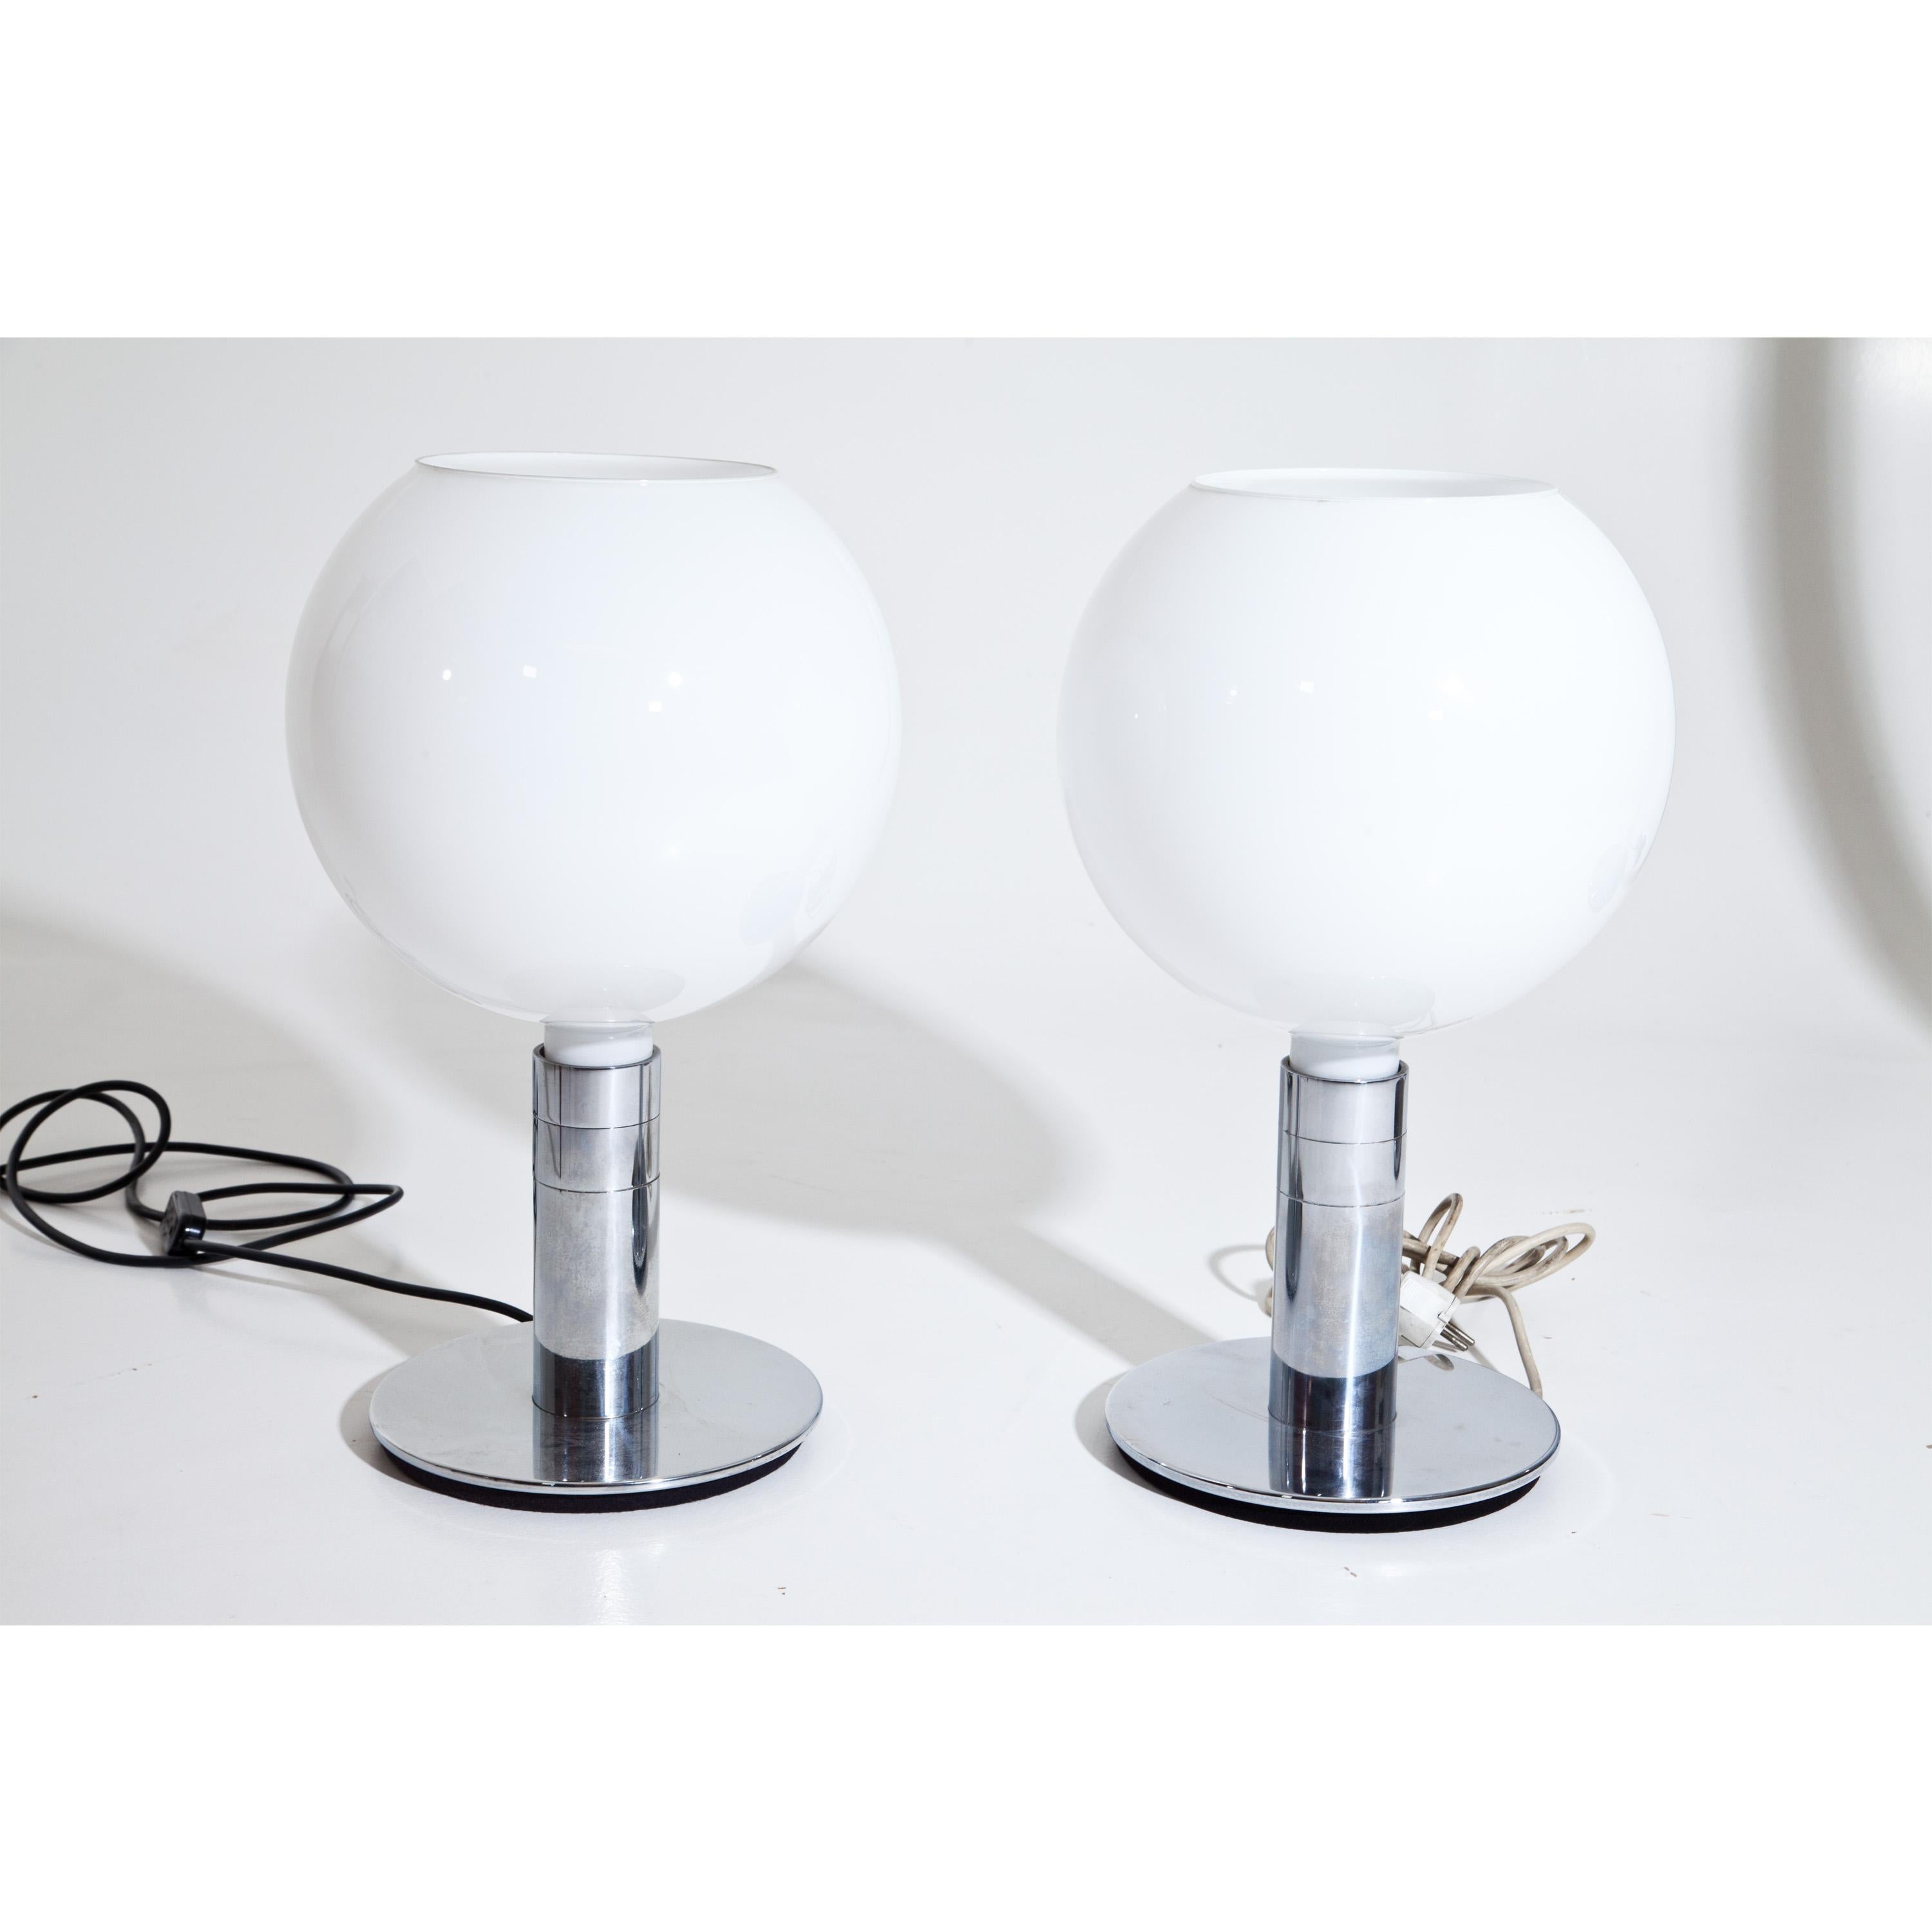 Paar Tischlampen auf rundem verchromtem Sockel und Opalglasschirm mit breiter Öffnung. Im Sockel ist 